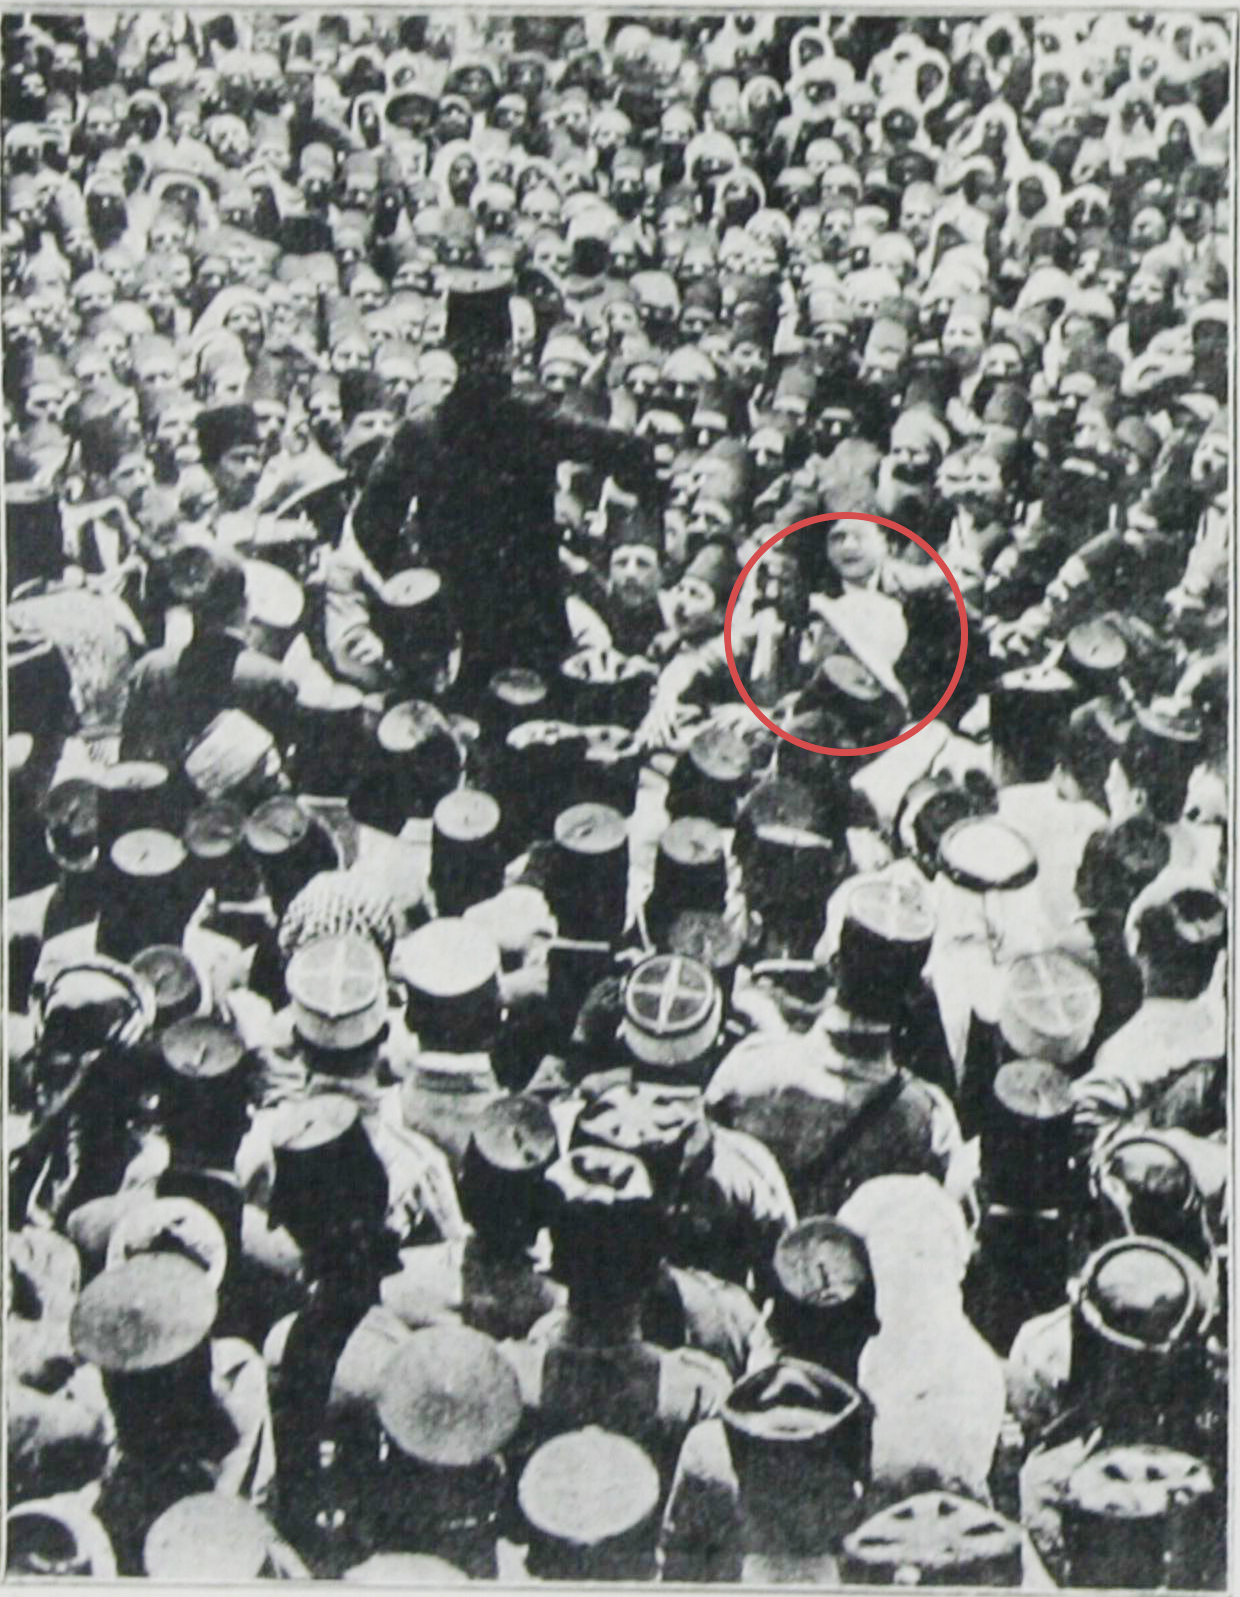 التاريخ السوري المعاصر - رئيس الحكومة السورية أحمد نامي في دمشق أثناء خطابه أمام الشعب عام 1926